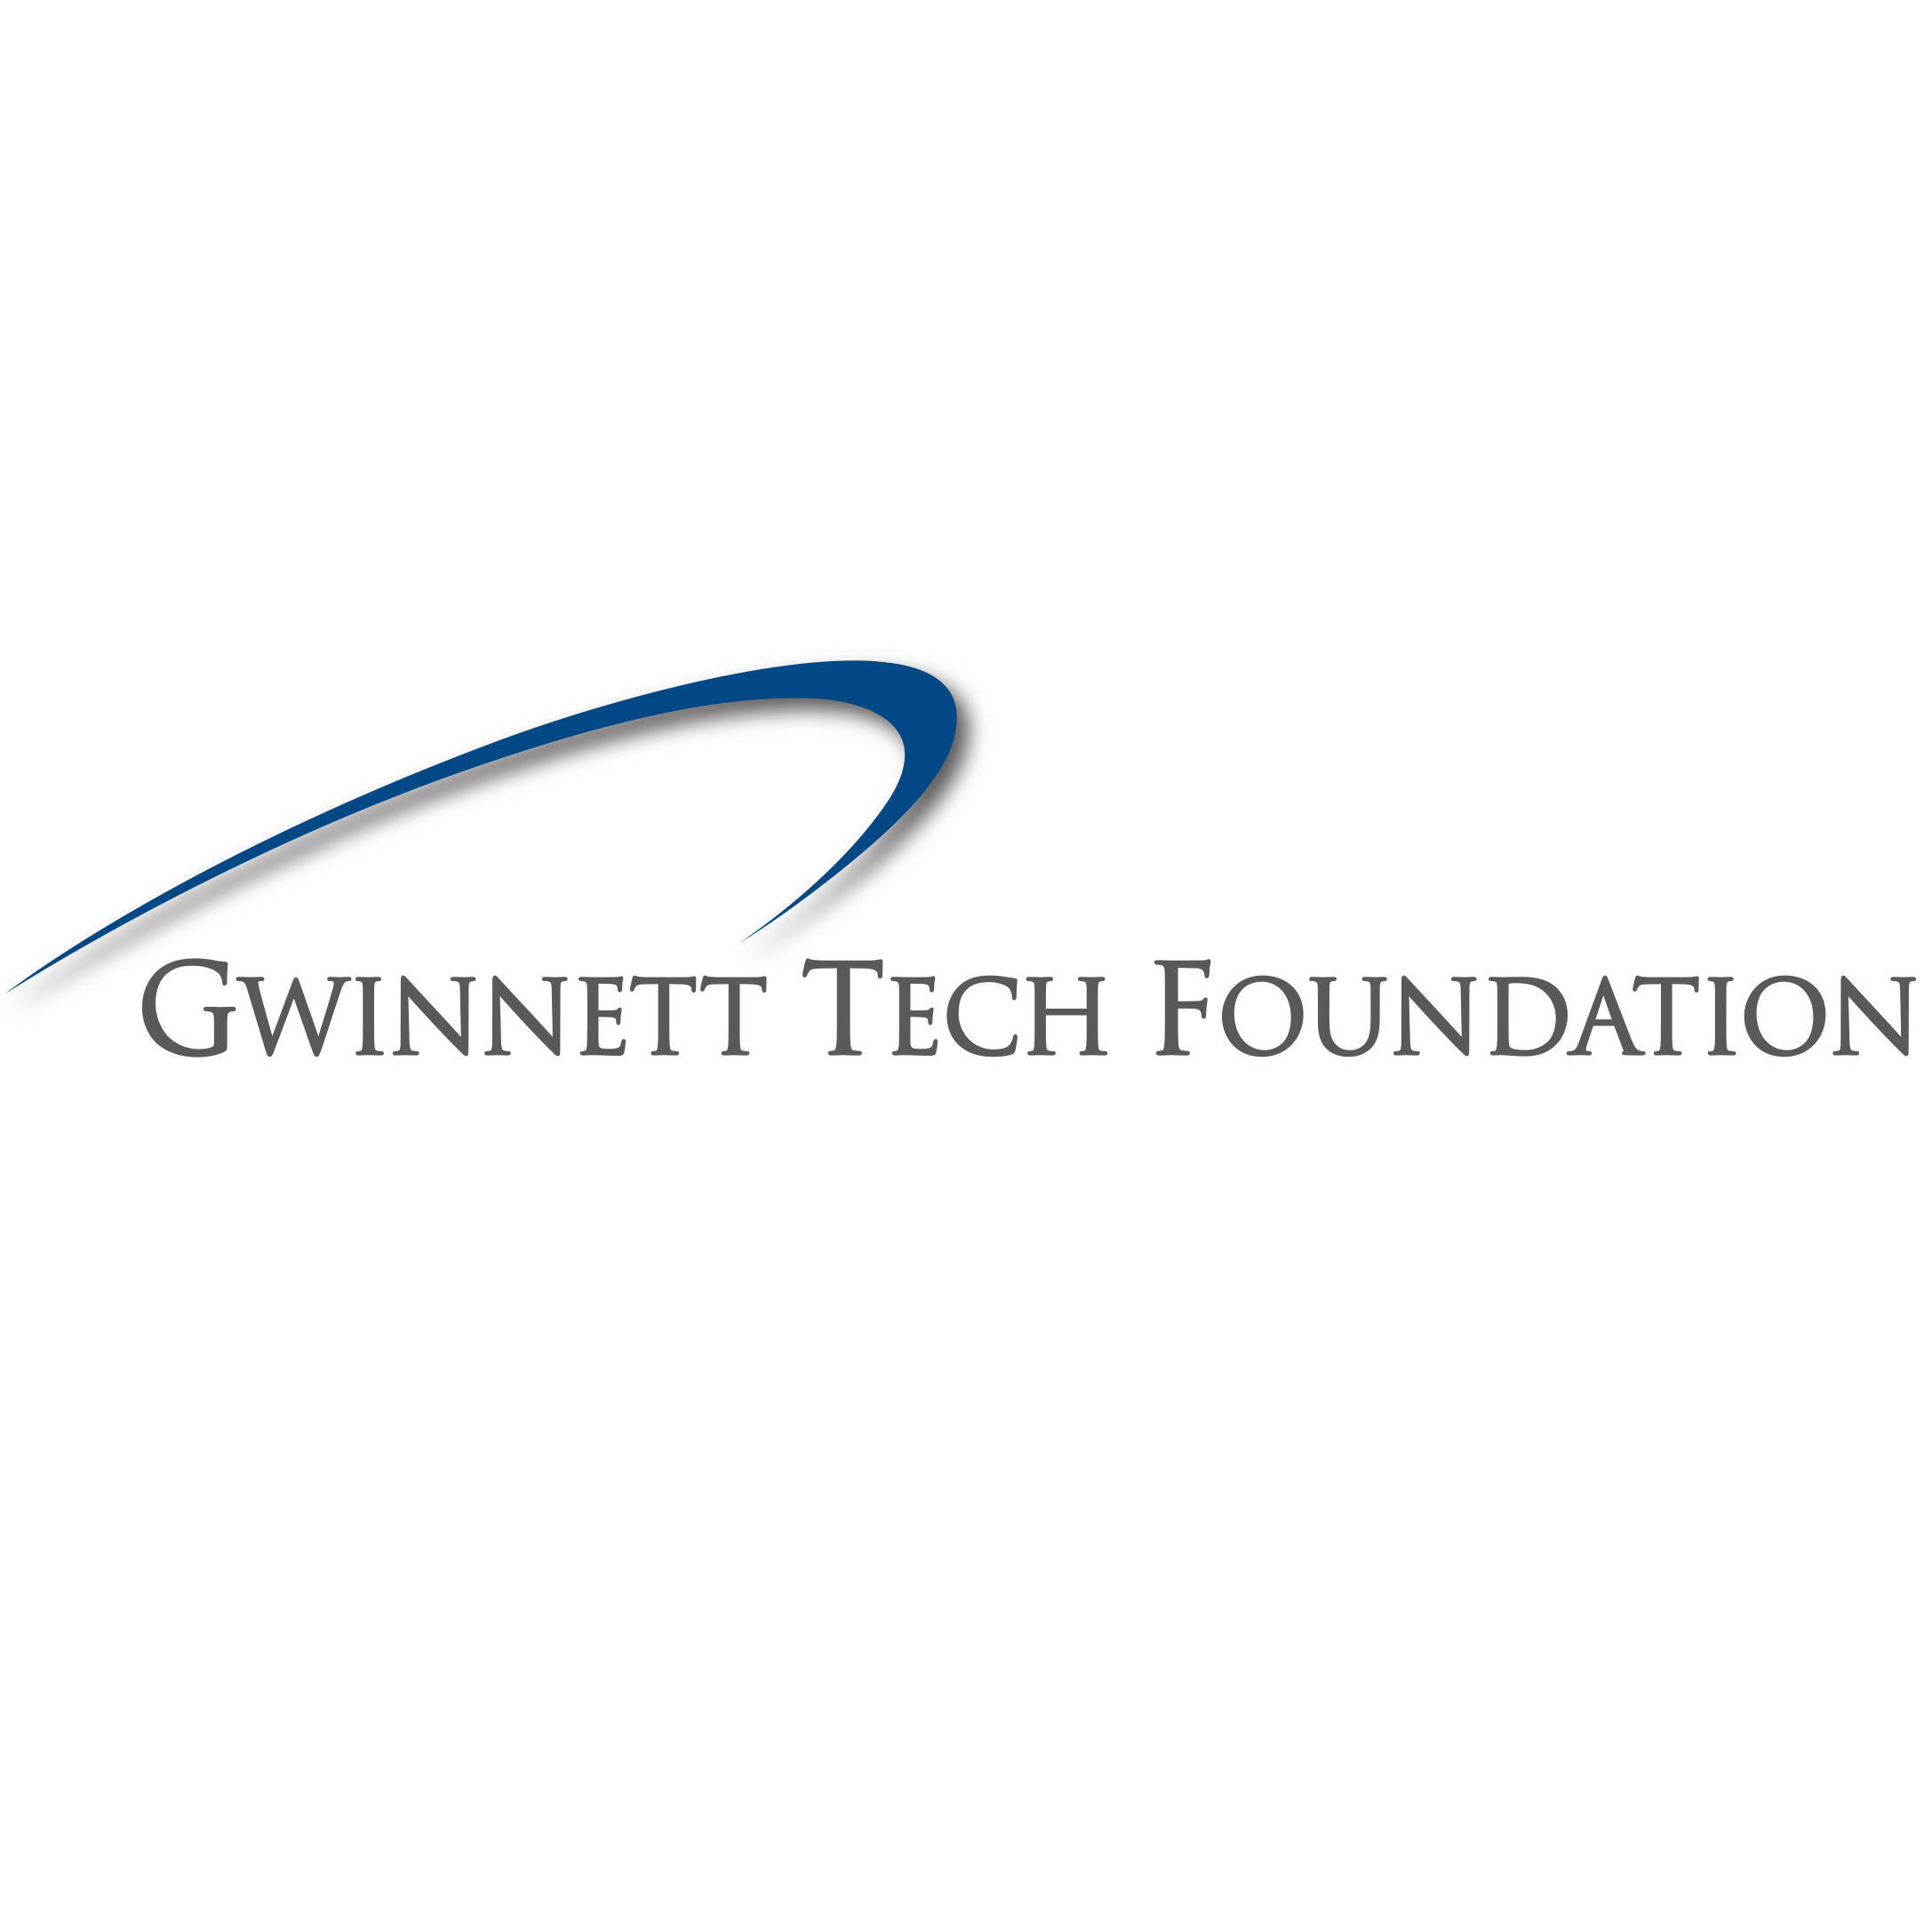 GTF Logo